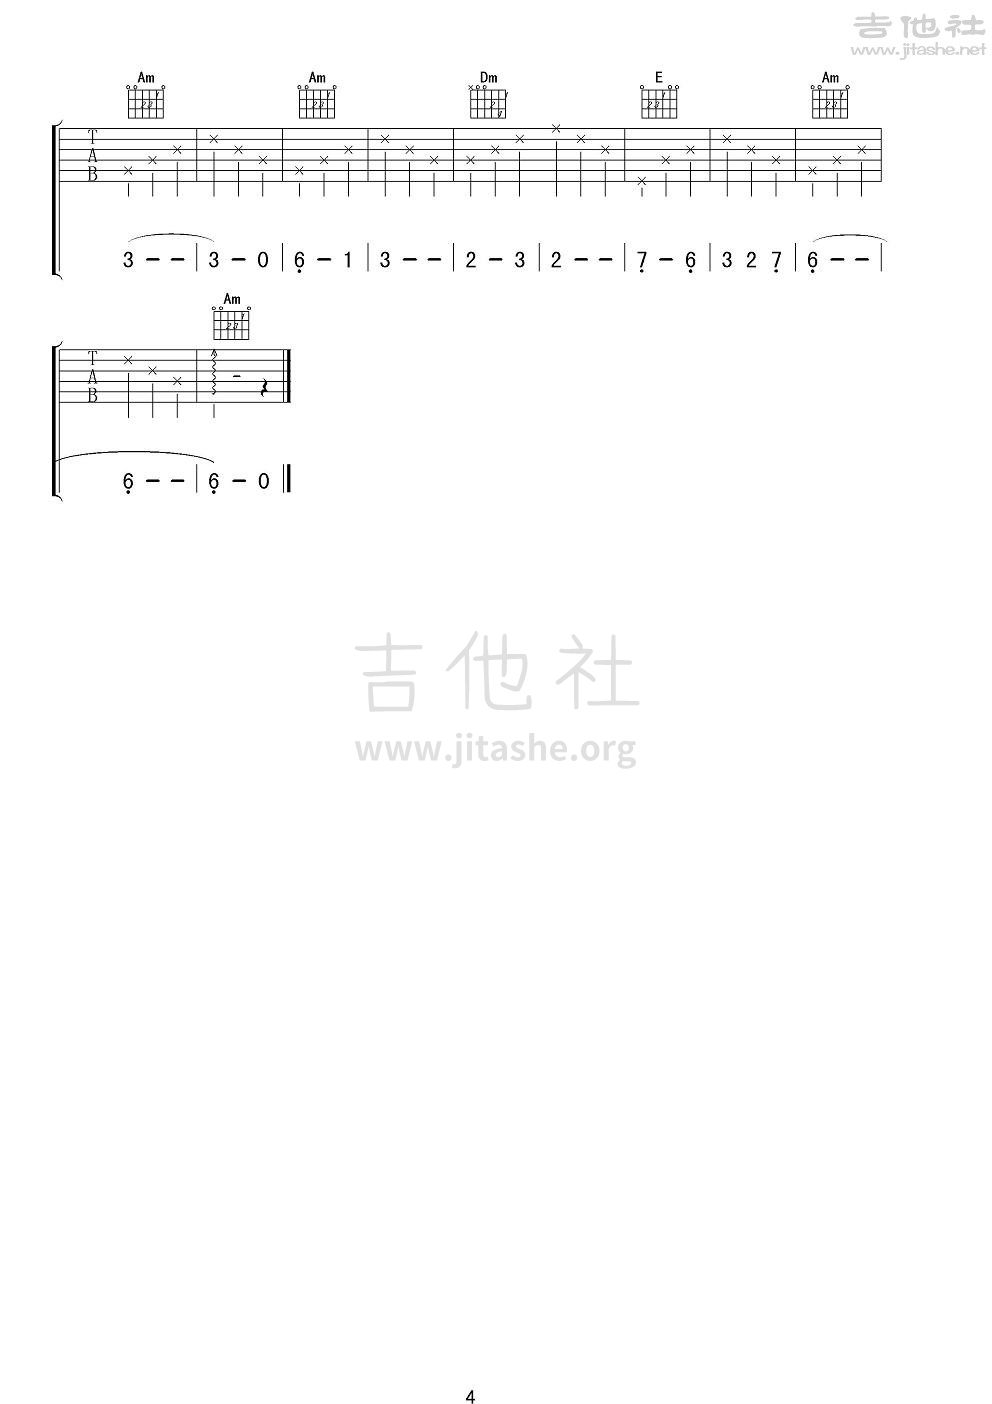 打印:思恋吉他谱_迪里拜尔_《思恋》男声版吉他谱4.JPG